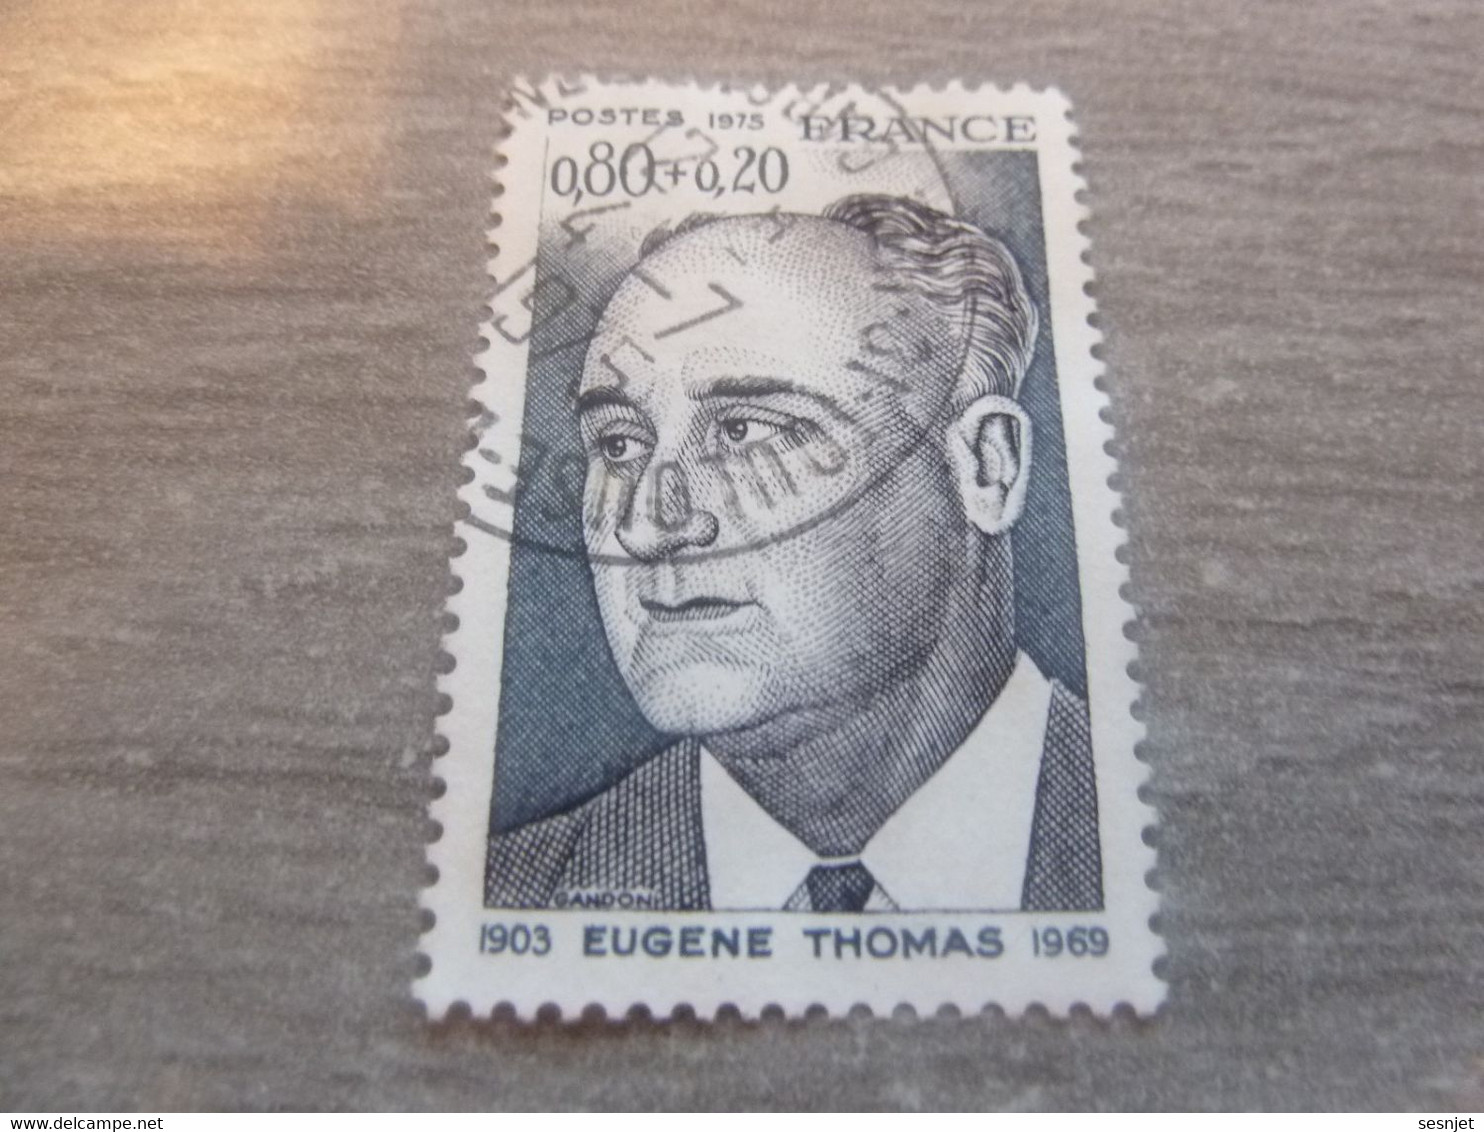 Eugène Thomas (1903-1969) Homme Politique - 80c.+20c. - Gris-bleu Et Gris - Olbitéré - Année 1974 - - Gebraucht